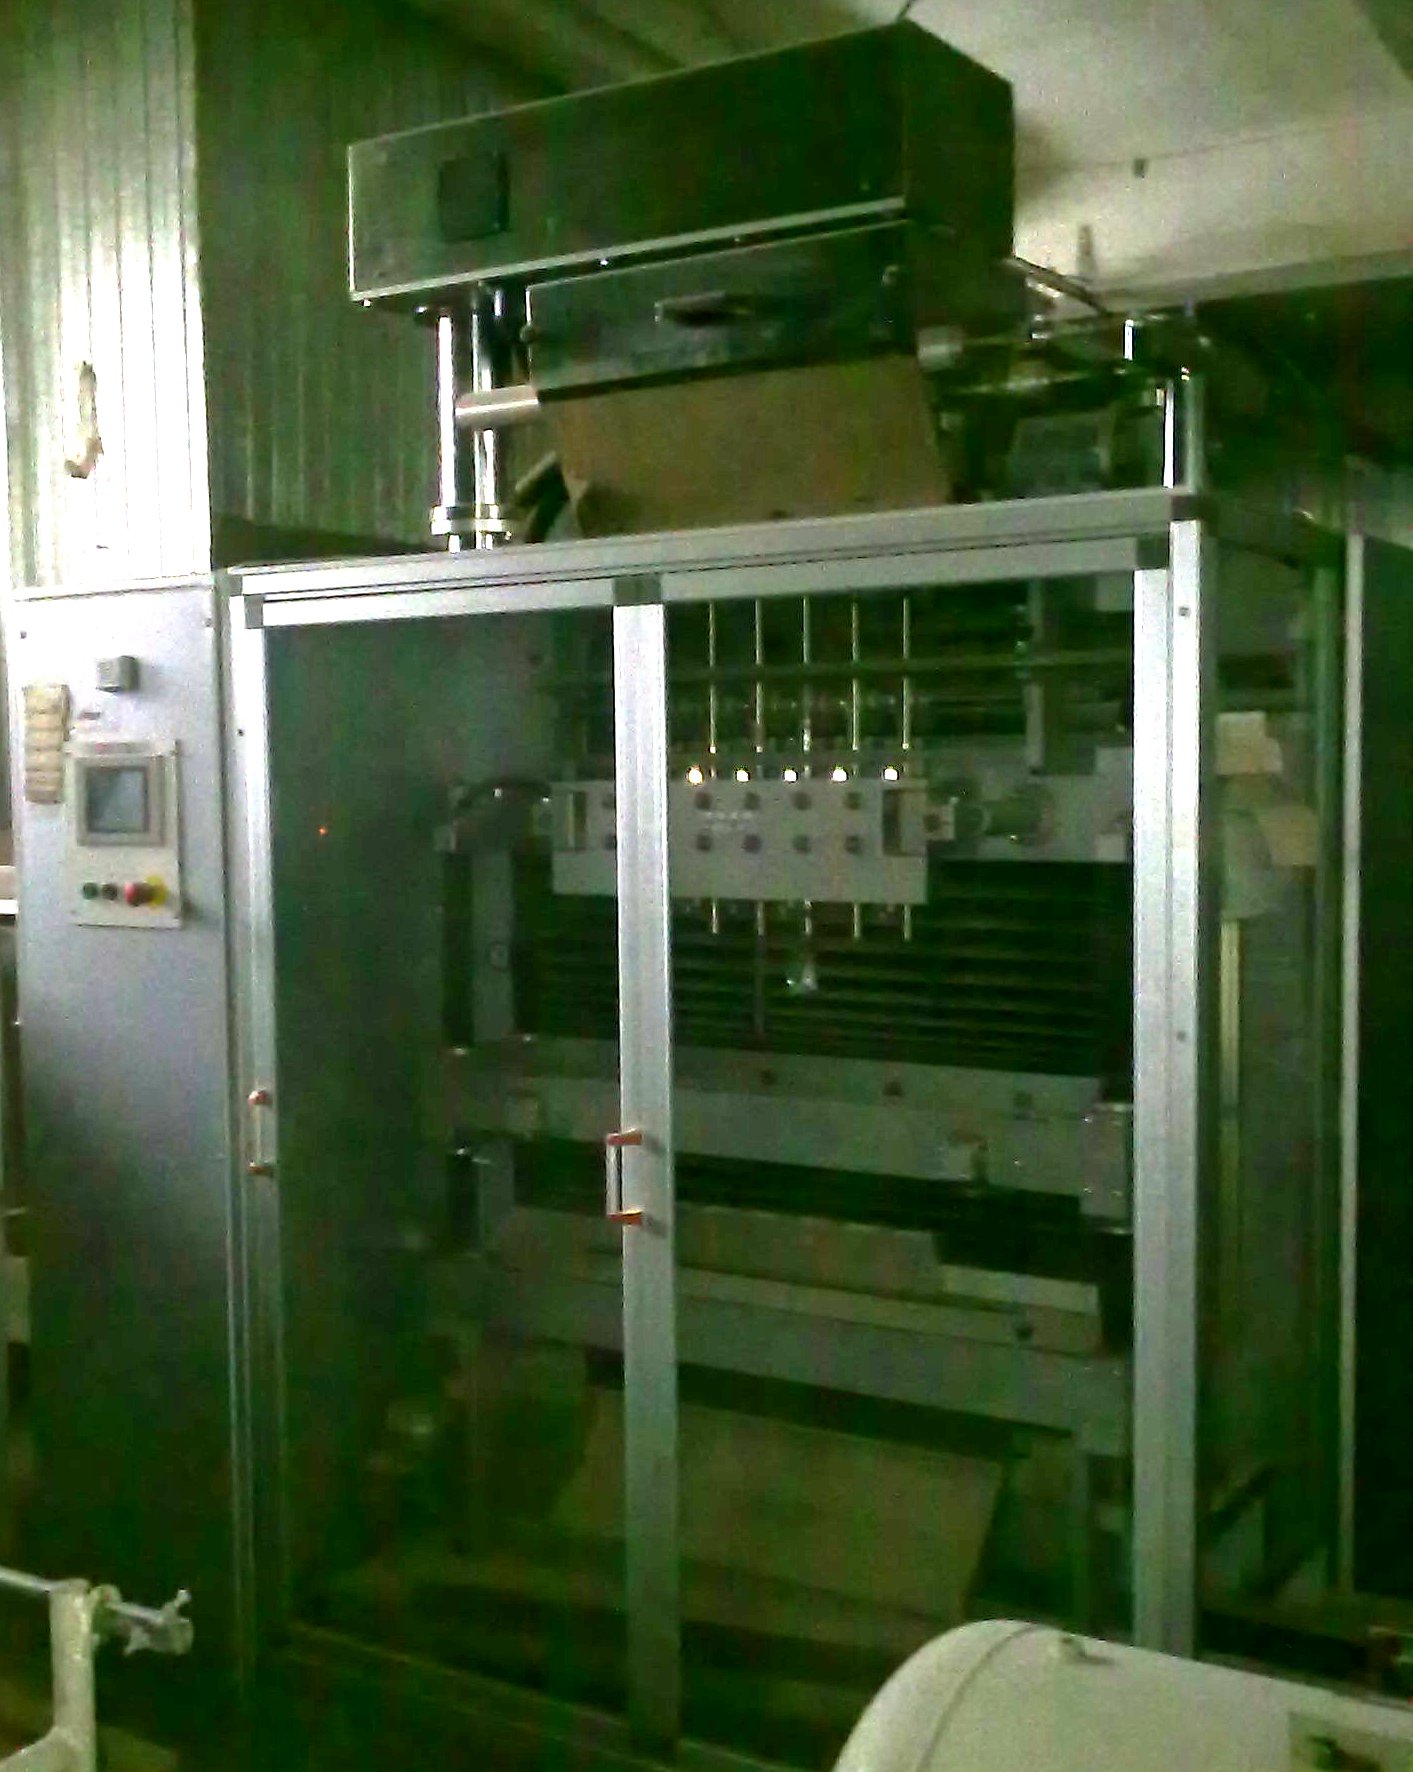 Автомат для фасовки в стики б.у. OMAG CS/6, Италия, 2006 г.в., 8 каналов, высокая производительность